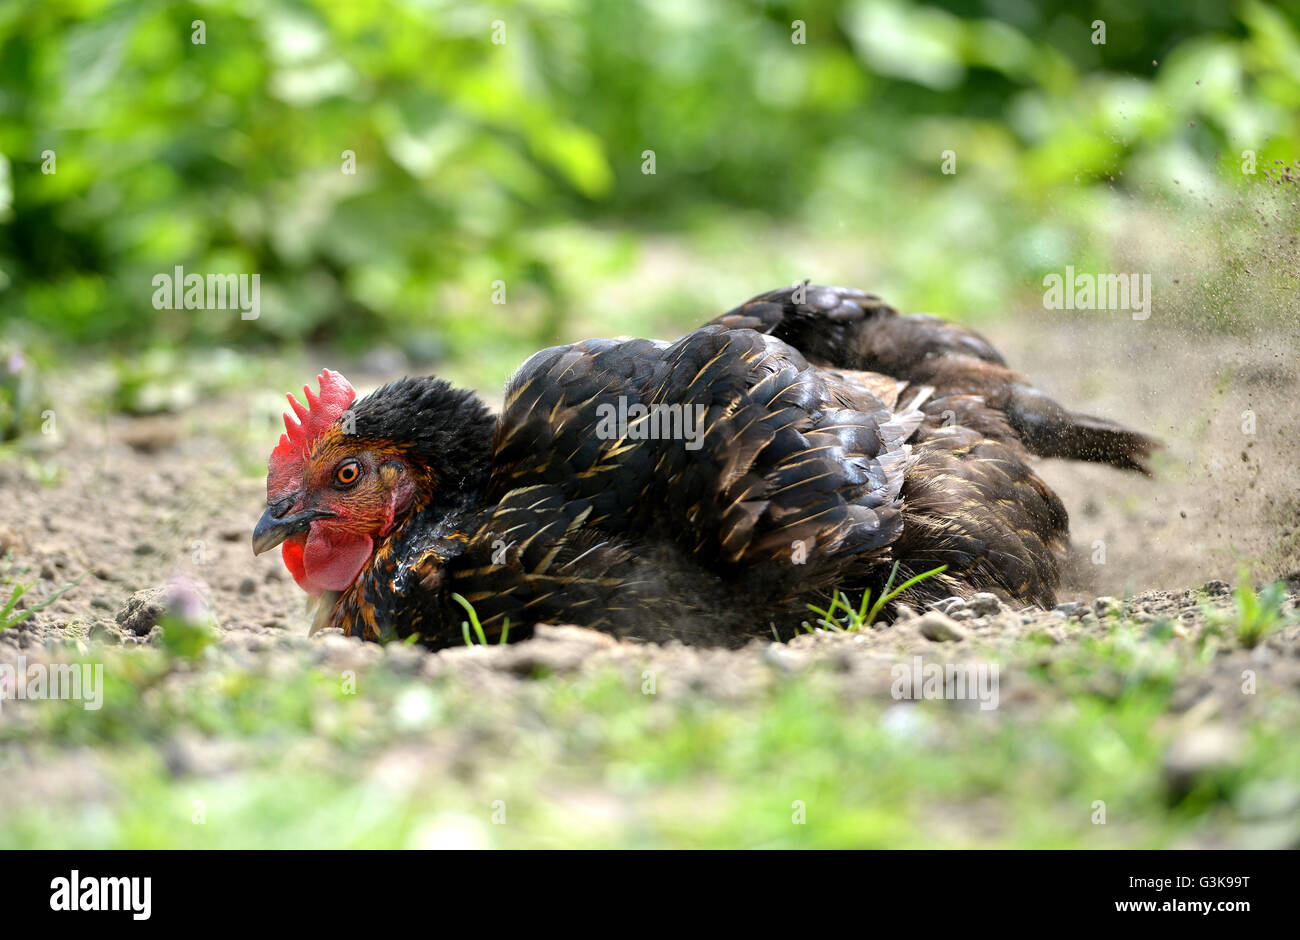 Chicken dust bath Stock Photo